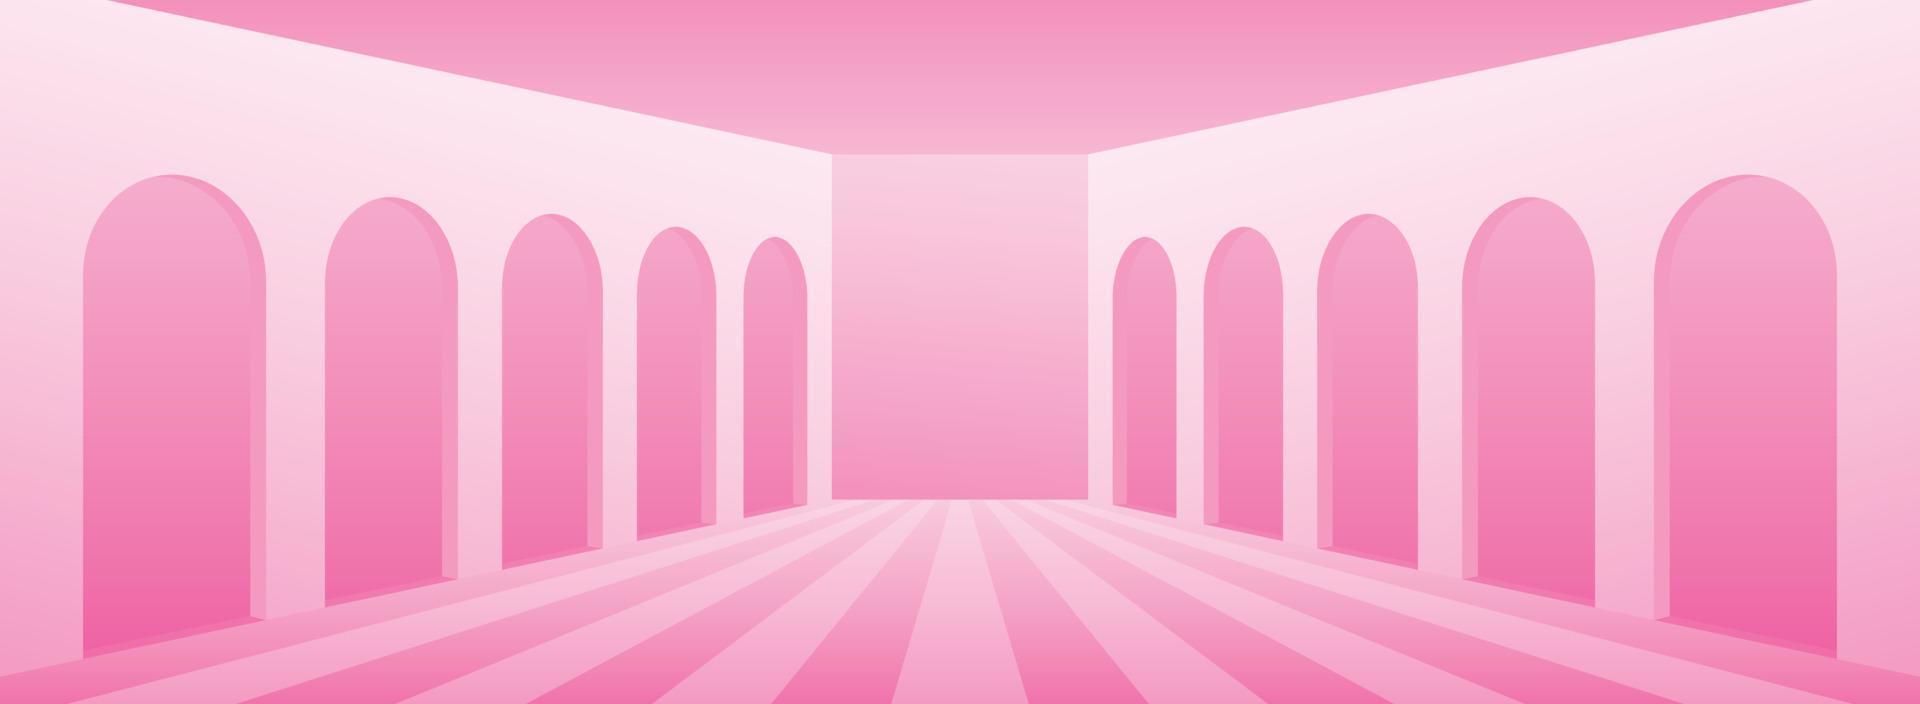 dolce rosa pastello ampio corridoio scena di sfondo 3d illustrazione vettoriale